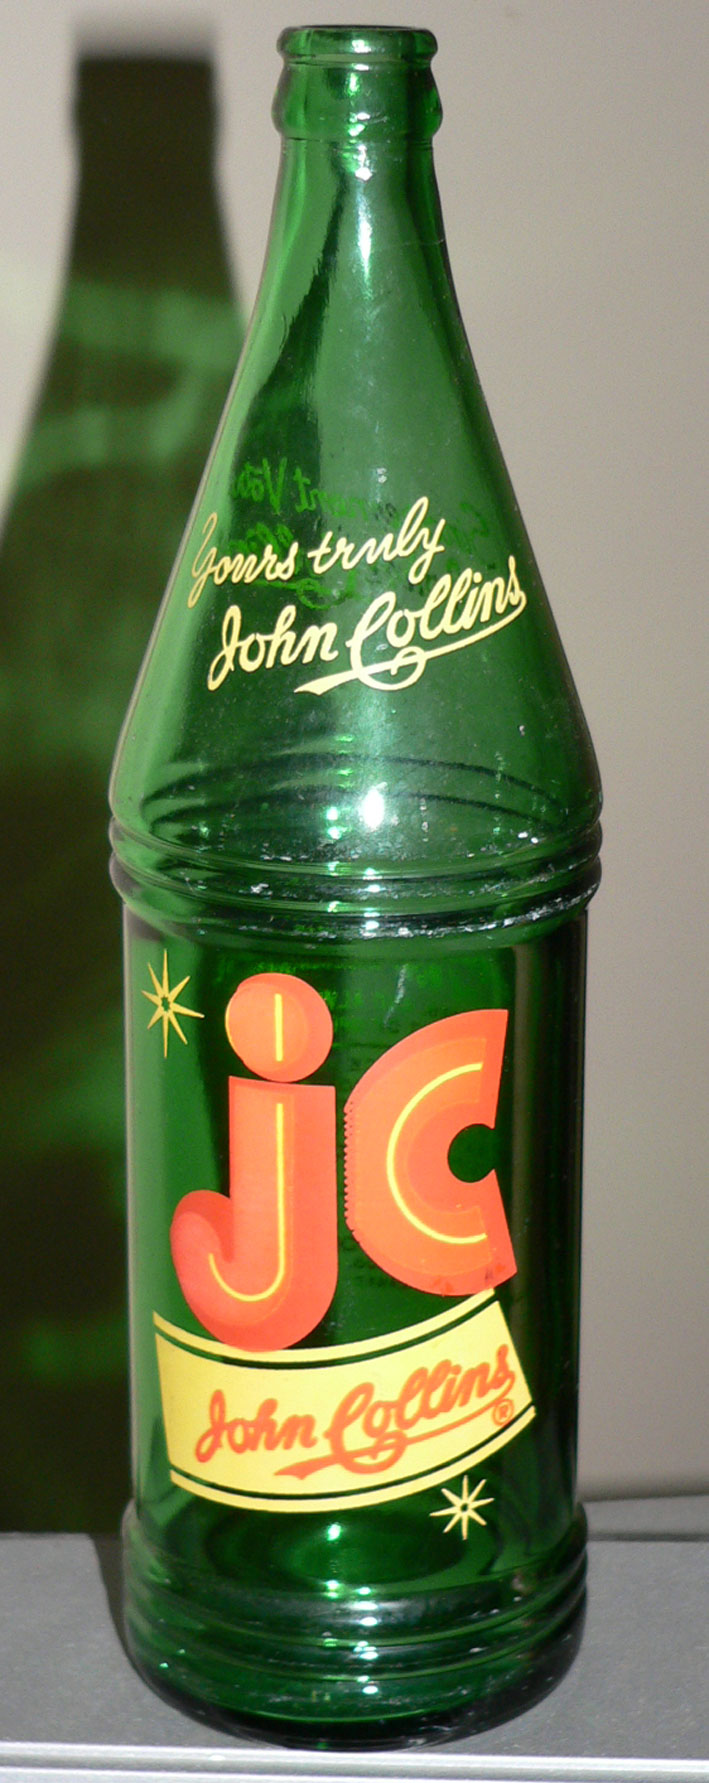 Bouteille de liqueur ACL "John Collins" verte - format 28oz - Waterloo, Quebec John-c10